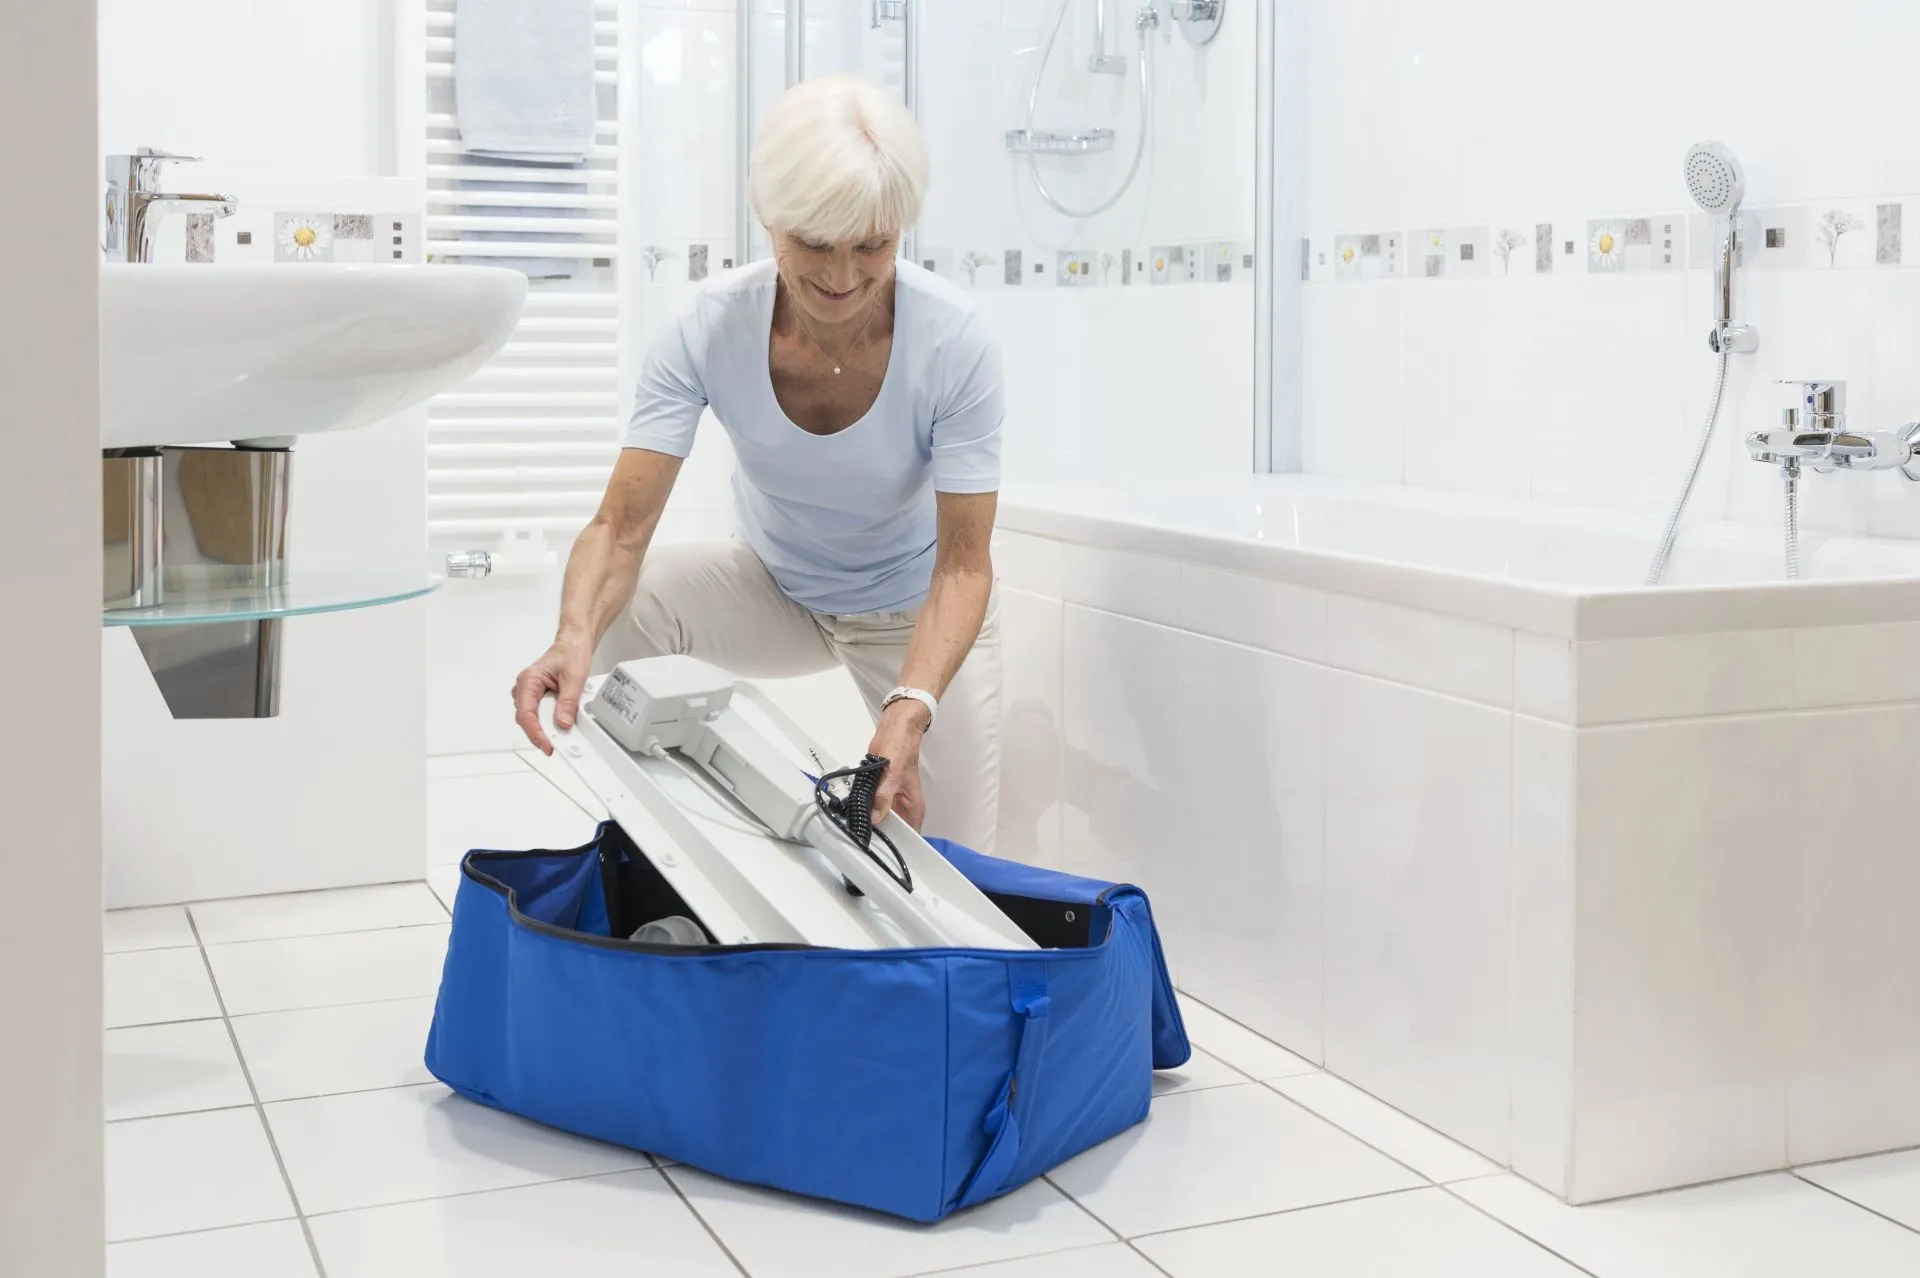 A senior woman packing away a bathroom aid into a blue bag